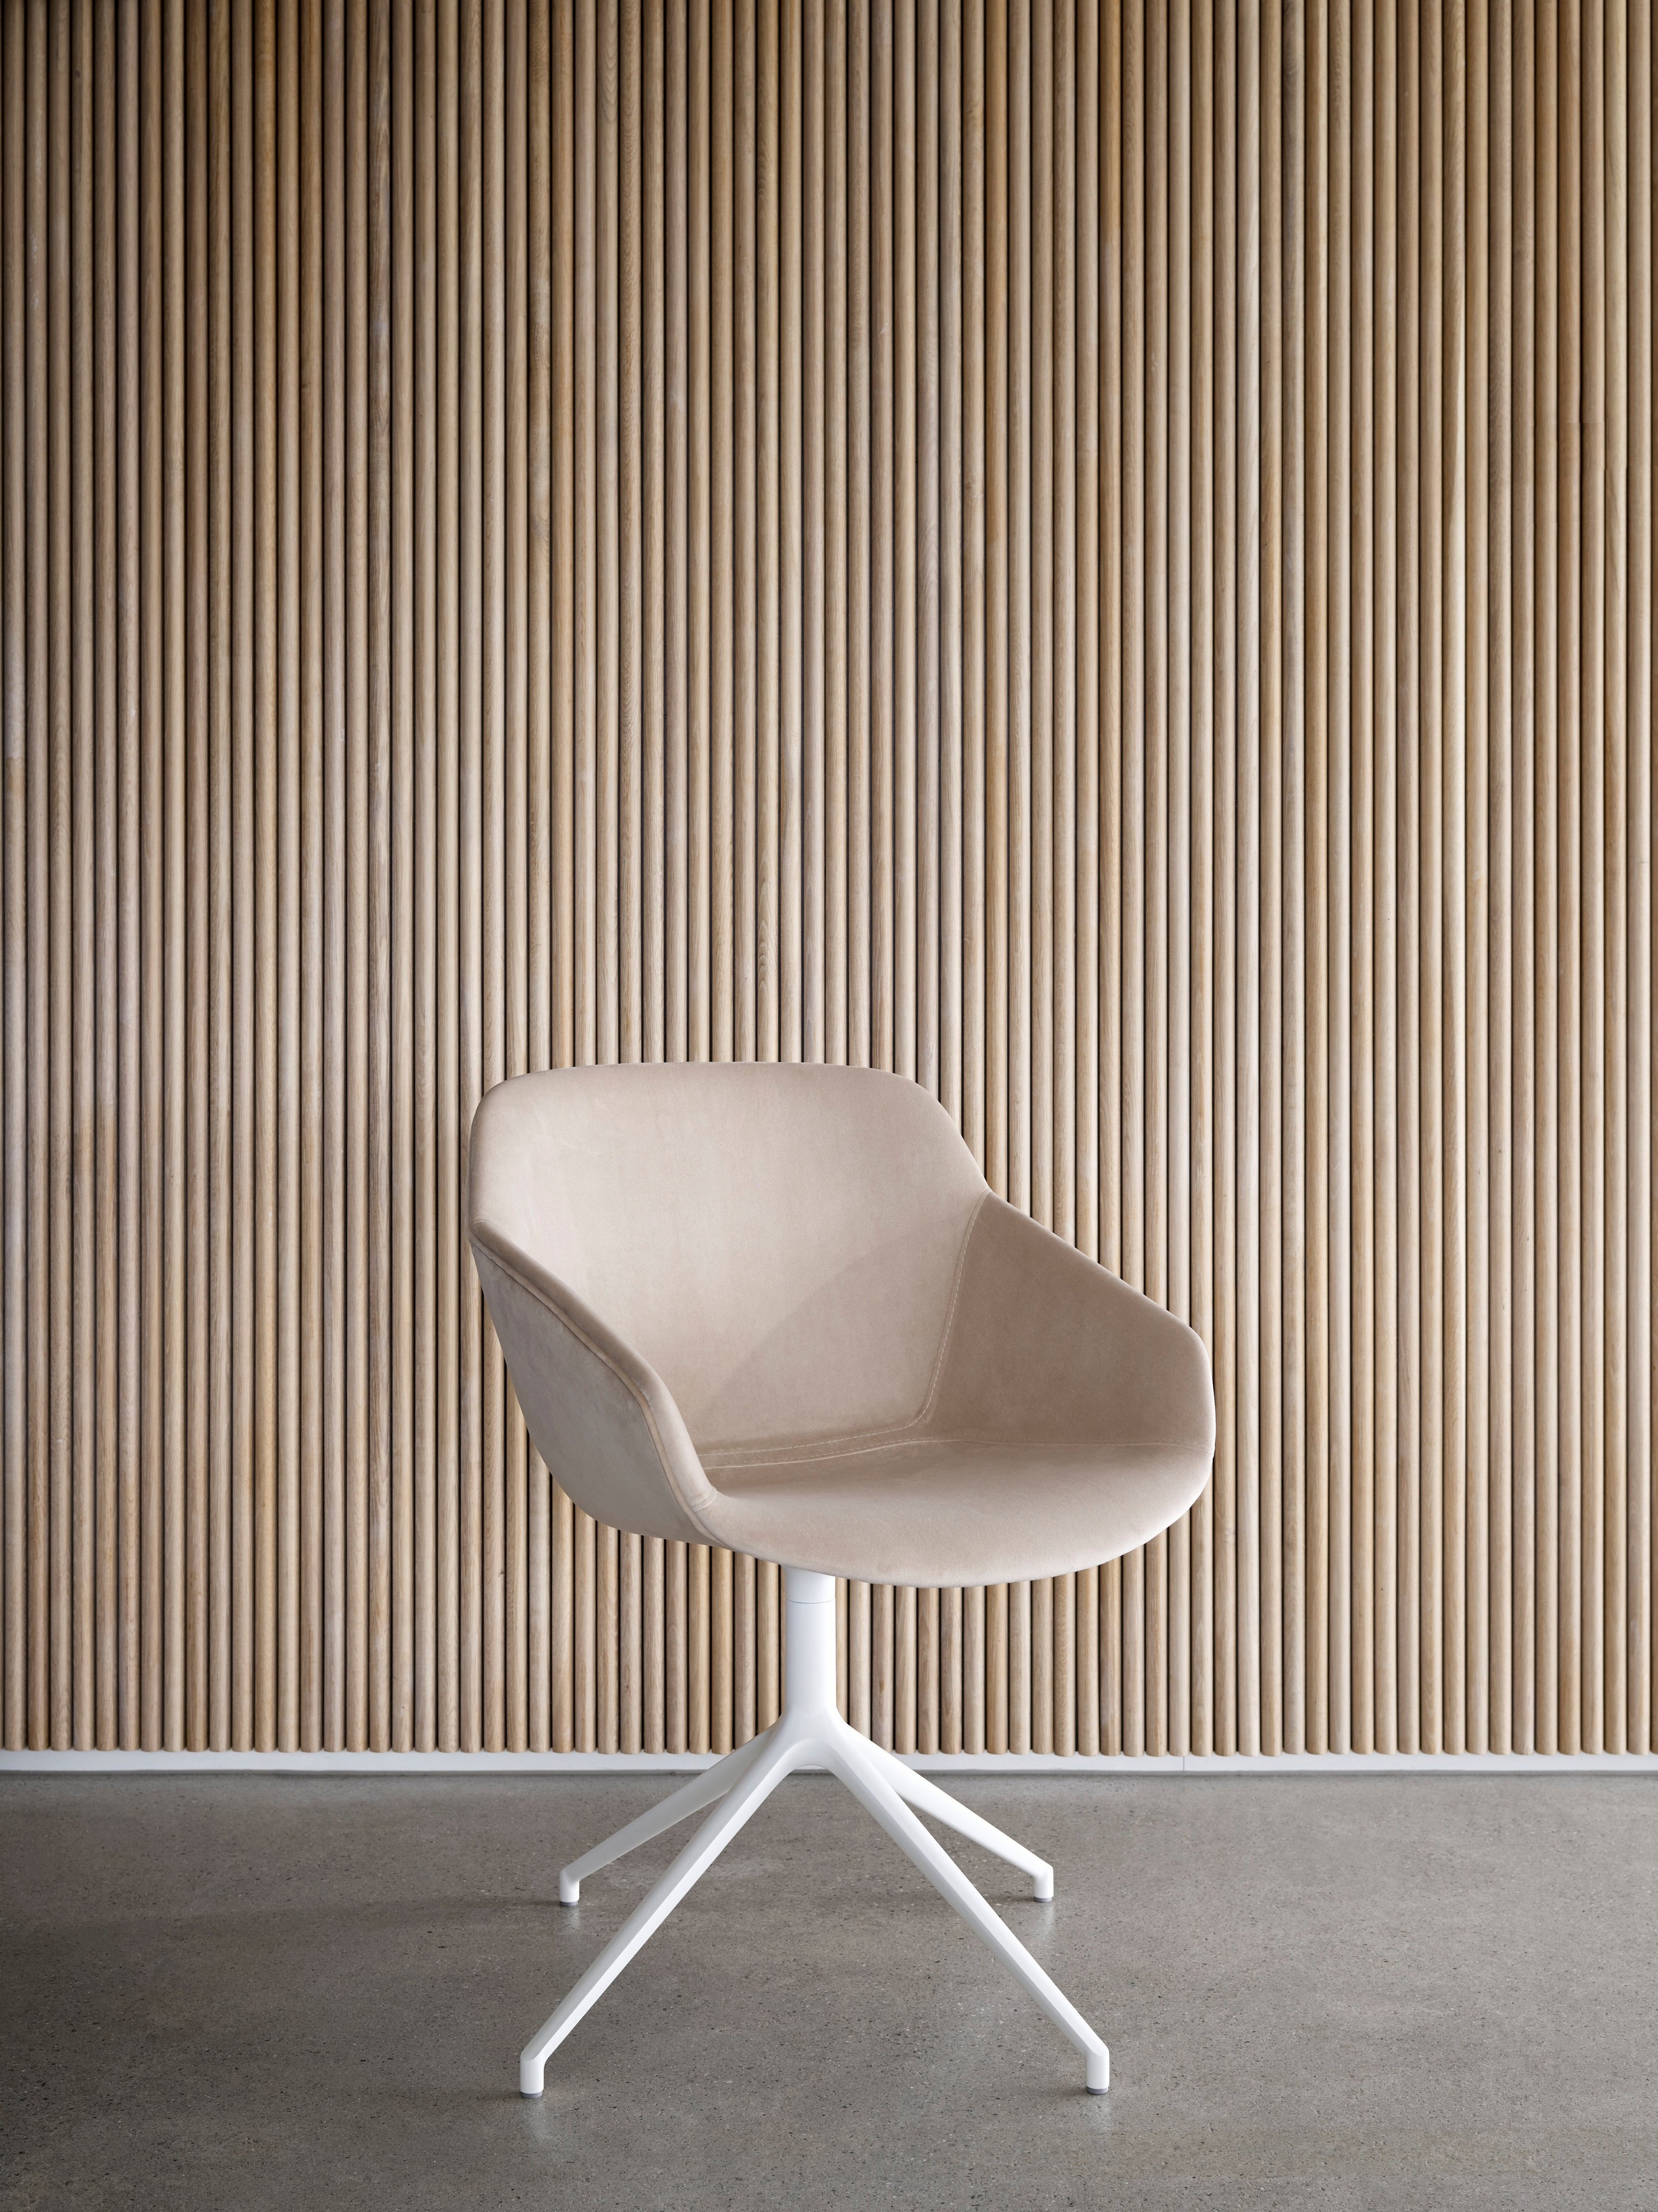 Бежевый стул с белым основанием на фоне стенки с вертикальными деревянными панелями.